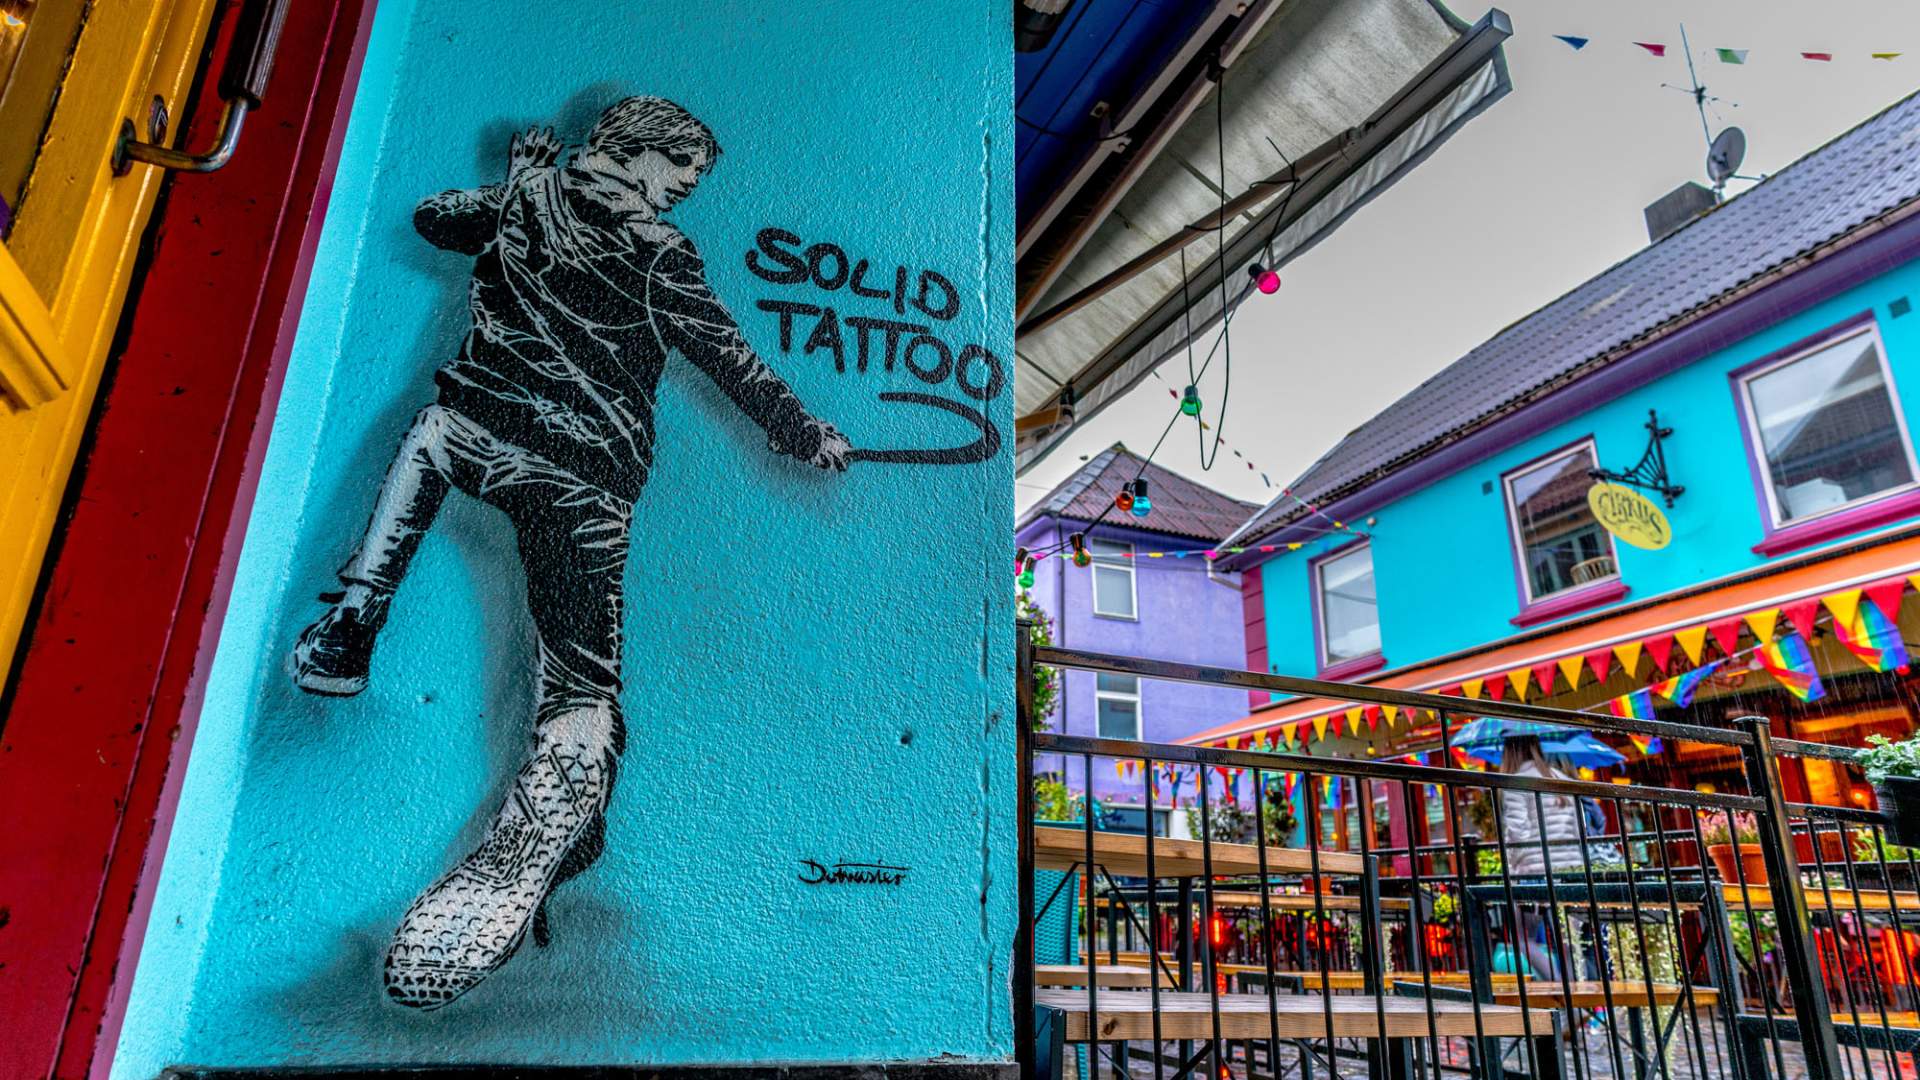 Stavanger Street Art: "Rude Kids: Solid Tattoo" von Dotmasters